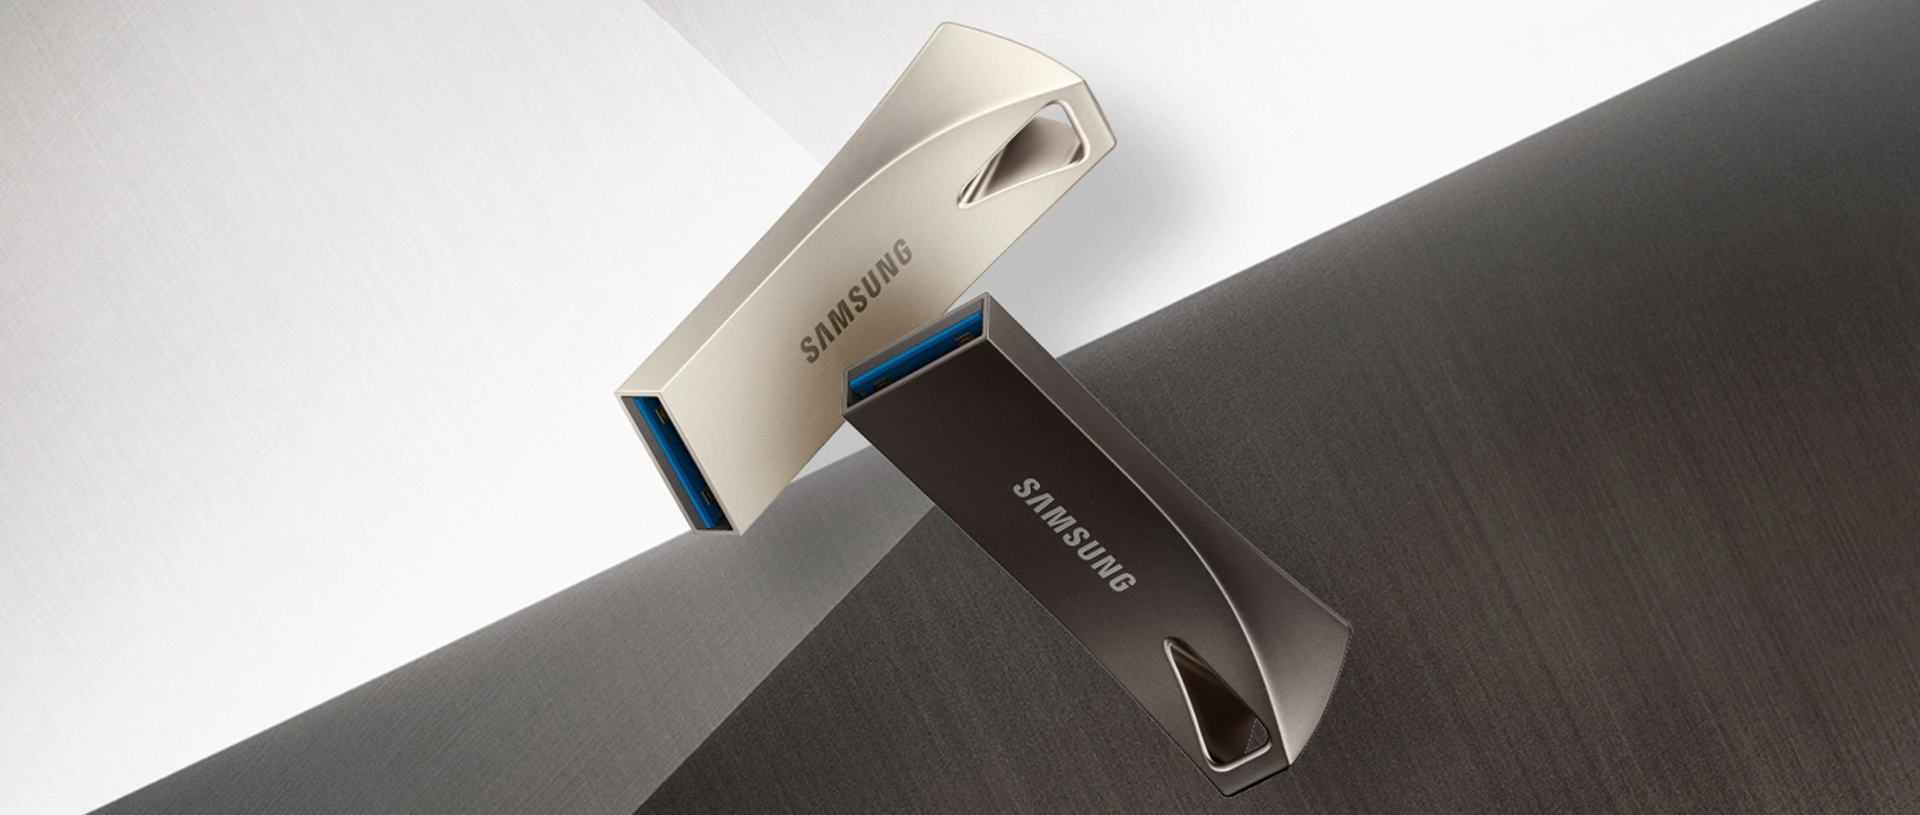 Samsung Bar Plus - синергия скорости и стиля